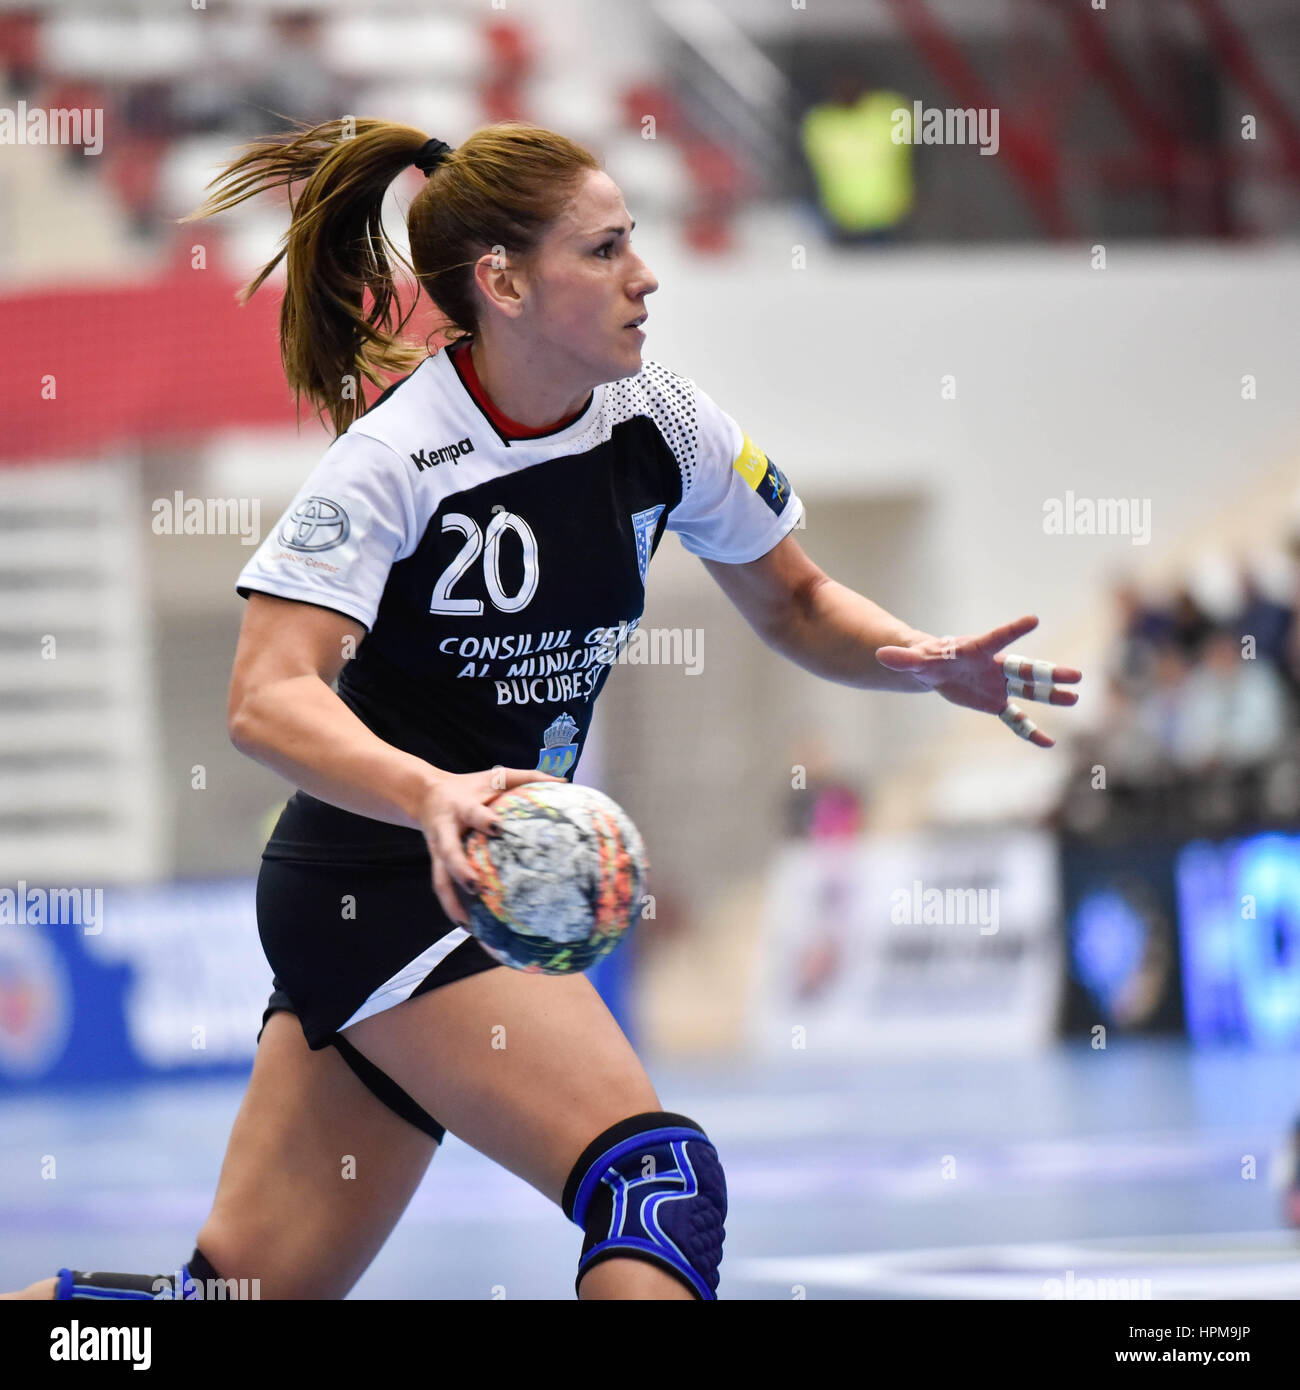 Noviembre 20, 2015: Carmen Martín de CSM Bucarest en acción durante la  mujer de la Federación Europea de balonmano (EHF) de la Liga de Campeones  entre CSM Bucarest (ROU) vs IK Savehof (